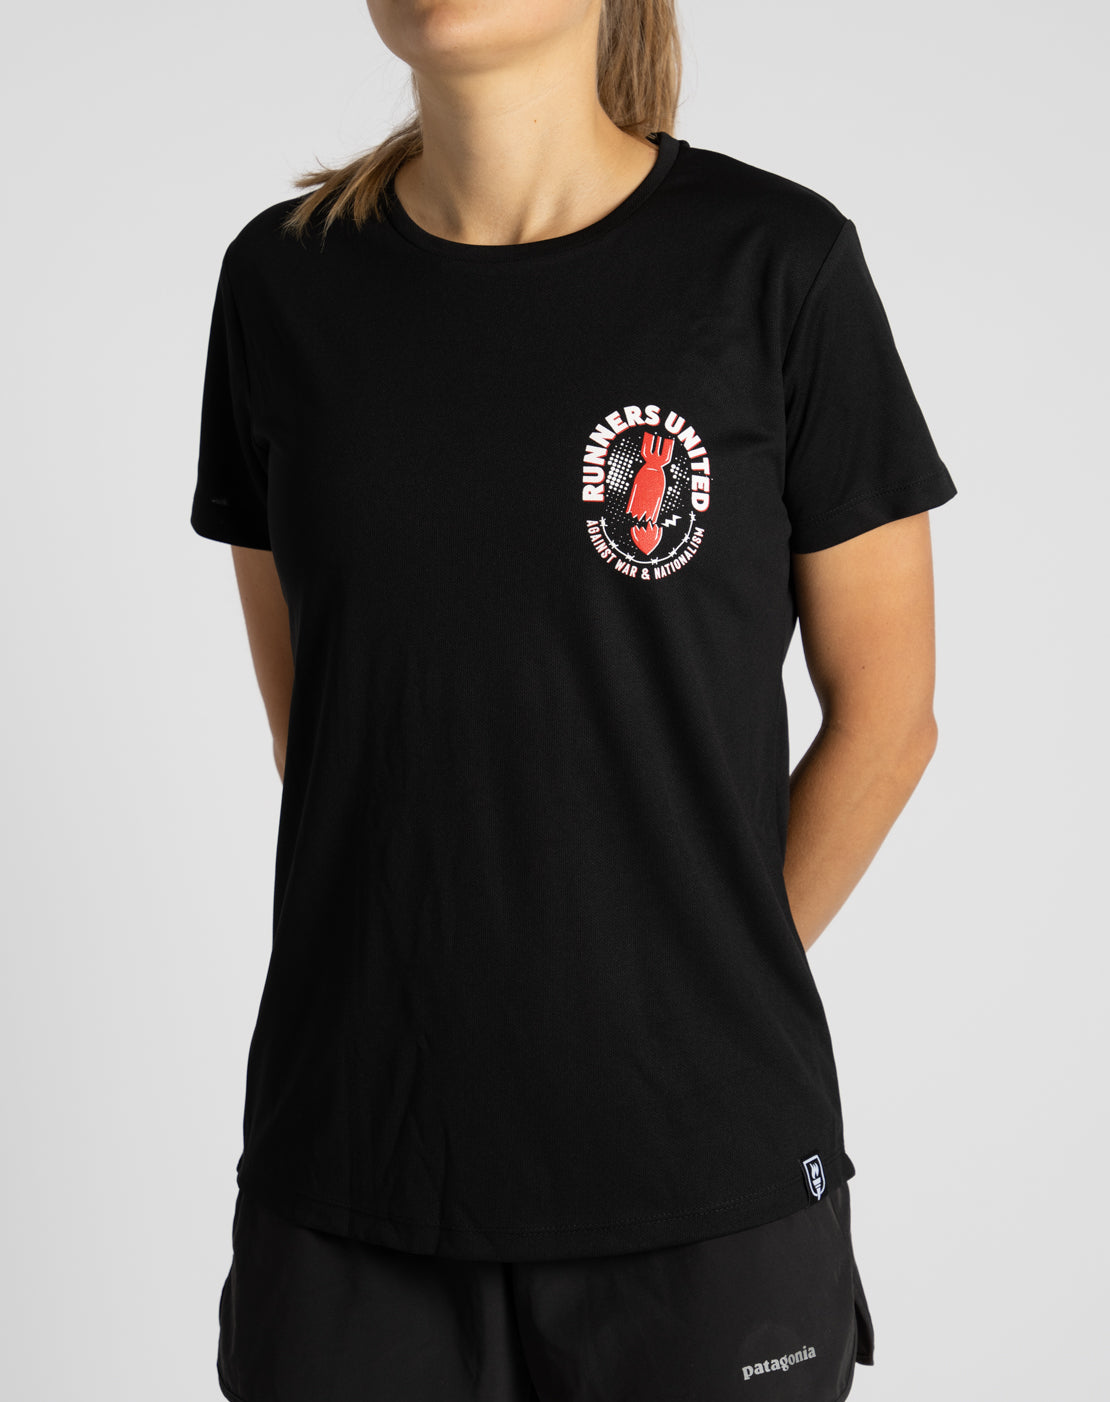 "Runners United III" Racing Shirt (Female)